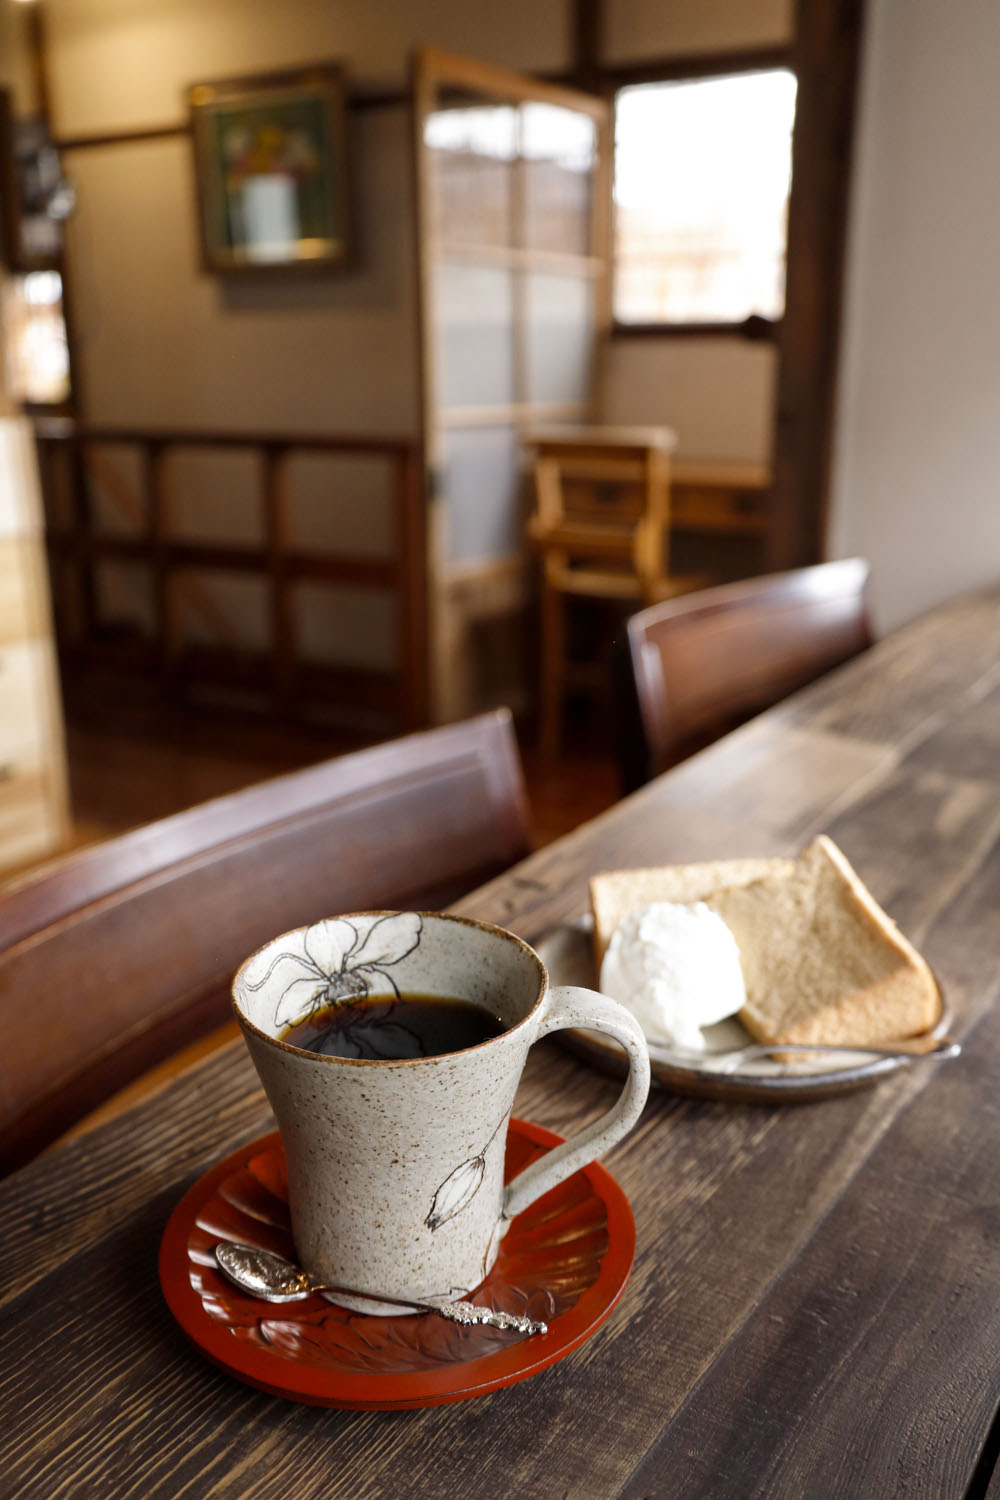 旬ごとに豆を選ぶスペシャルティコーヒー700円。この日はブルンジ。自家製アールグレイのシフォンケーキ350円。